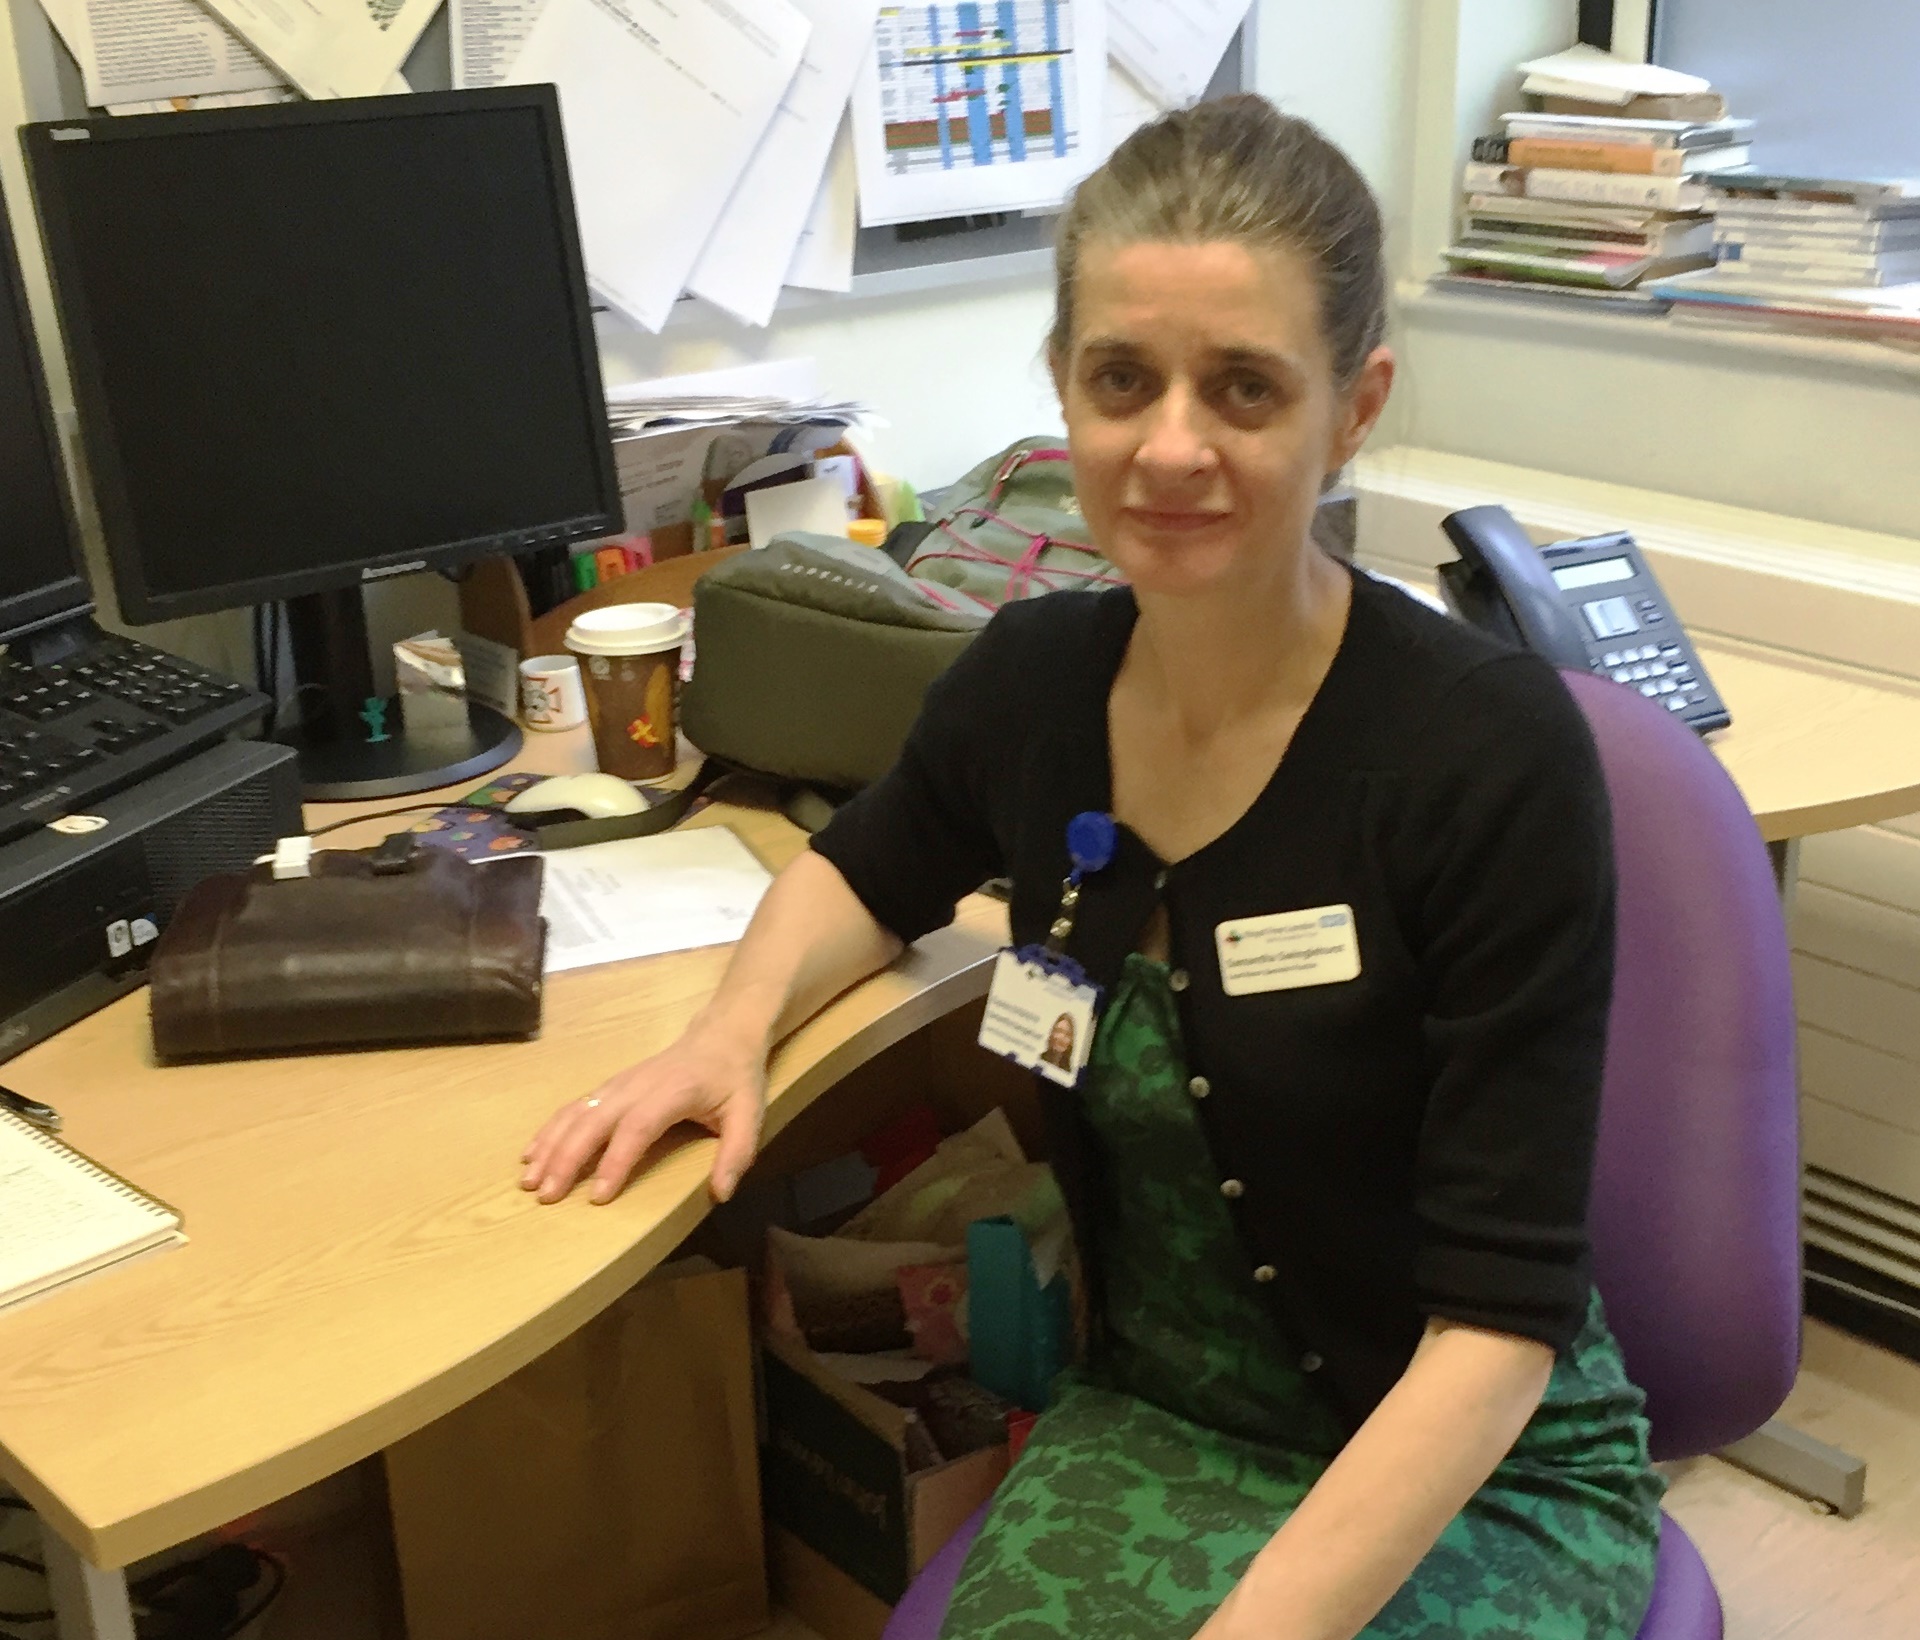 Samantha Swinglehurst, lead nurse in specialist practice